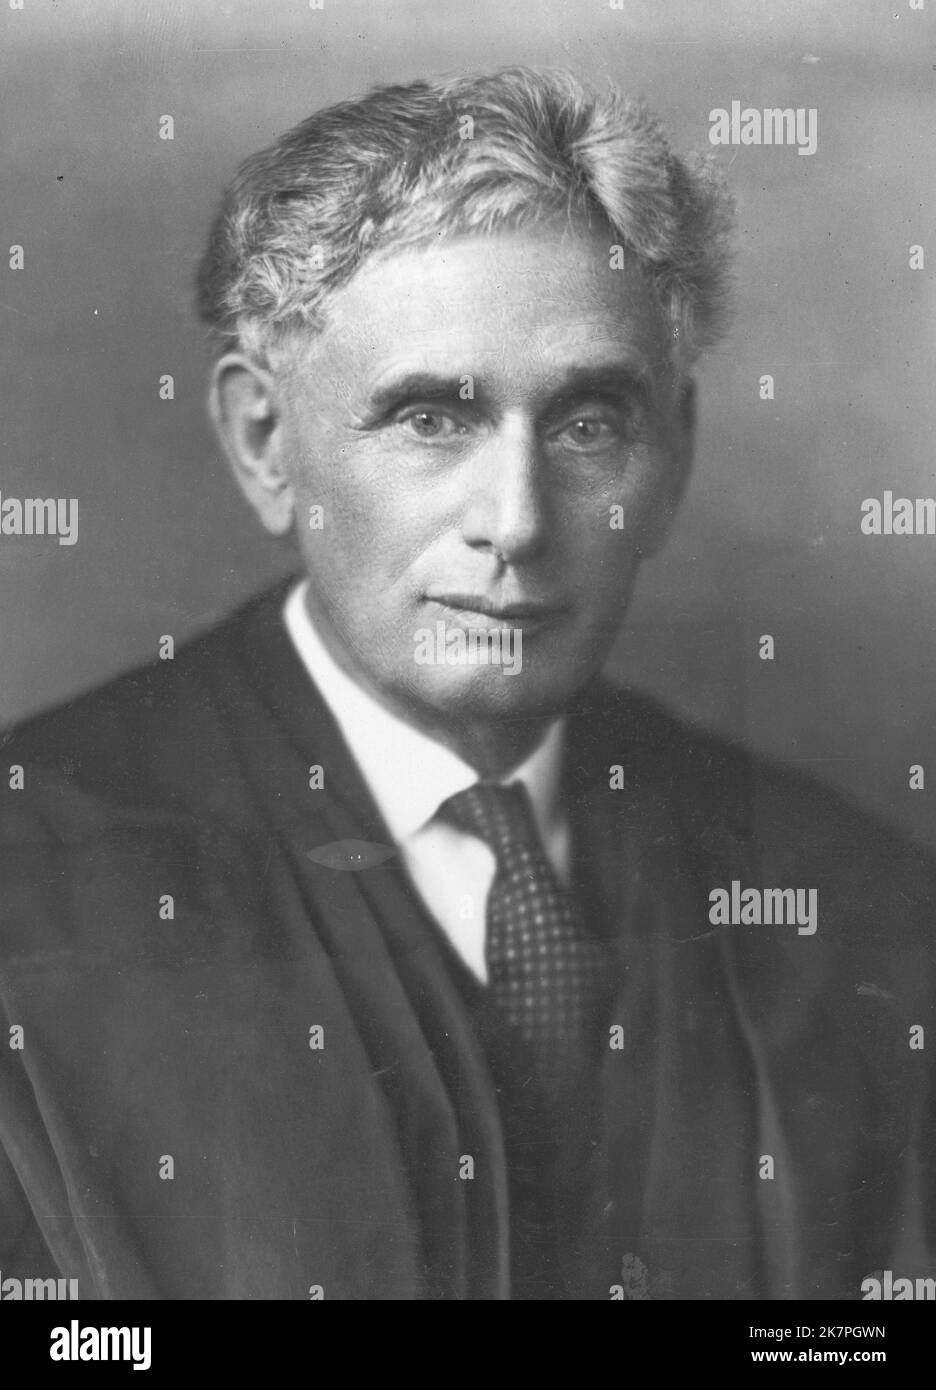 Louis Dembitz Brandeis (1856 – 1941) amerikanischer Jurist und Associate Justice vor dem Obersten Gerichtshof der Vereinigten Staaten von 1916 bis 1939. Stockfoto